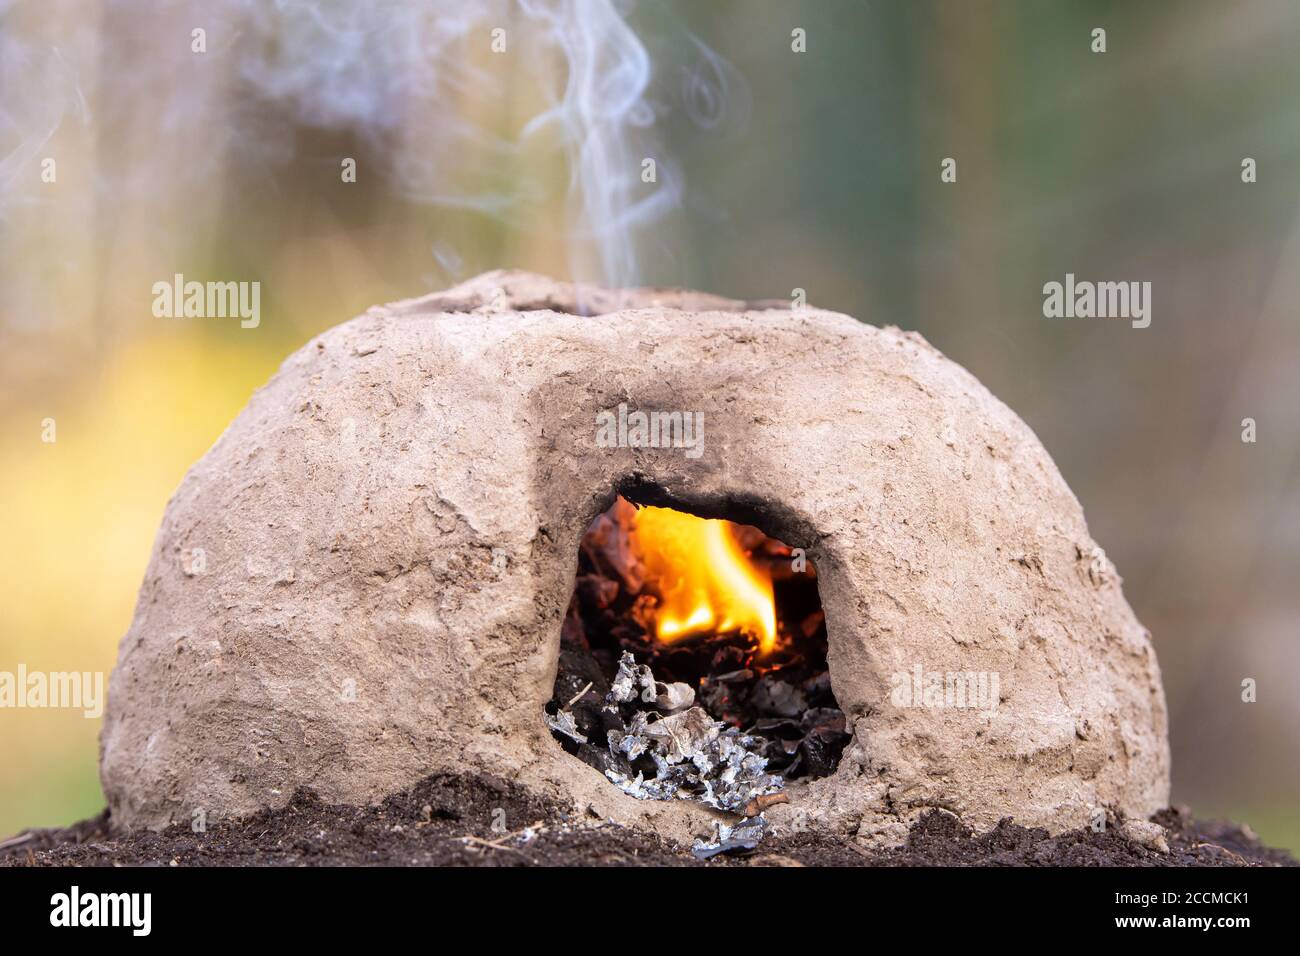 Un petit four primitif fait de boue. Un feu brûle à l'intérieur et de la fumée s'élève d'un trou dans le dessus. Banque D'Images